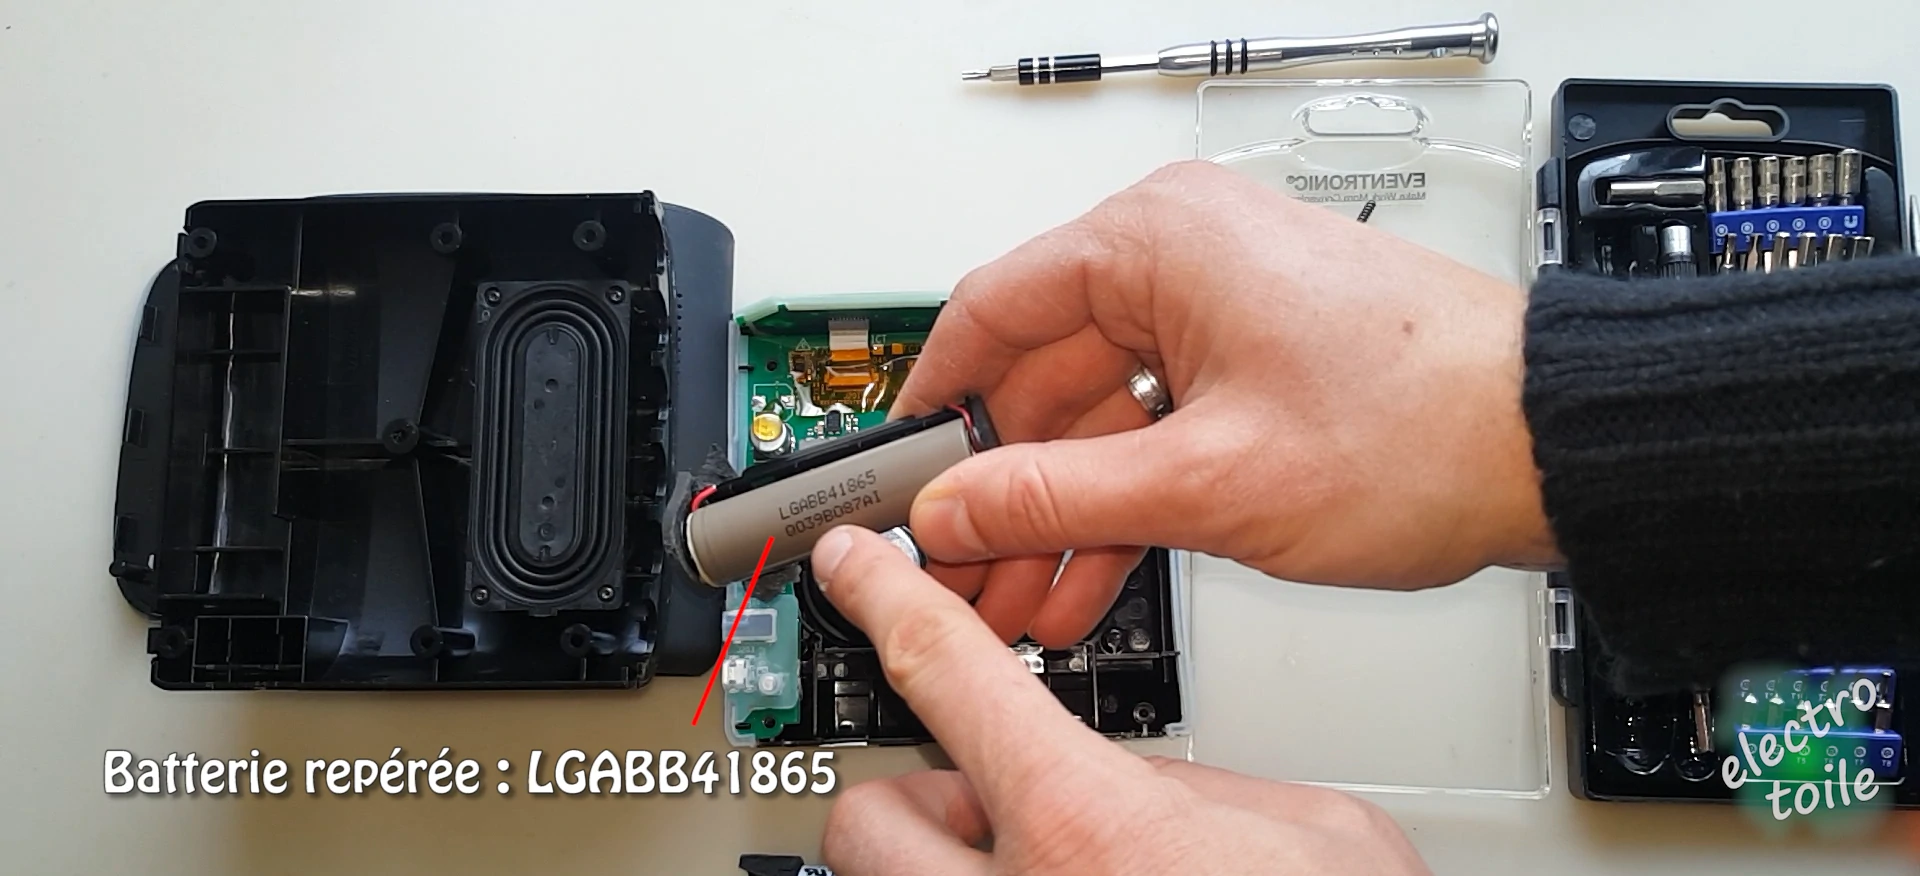 Emplacement de la batterie LGABB41865 pour l'enceinte portable soundlink color II de bose